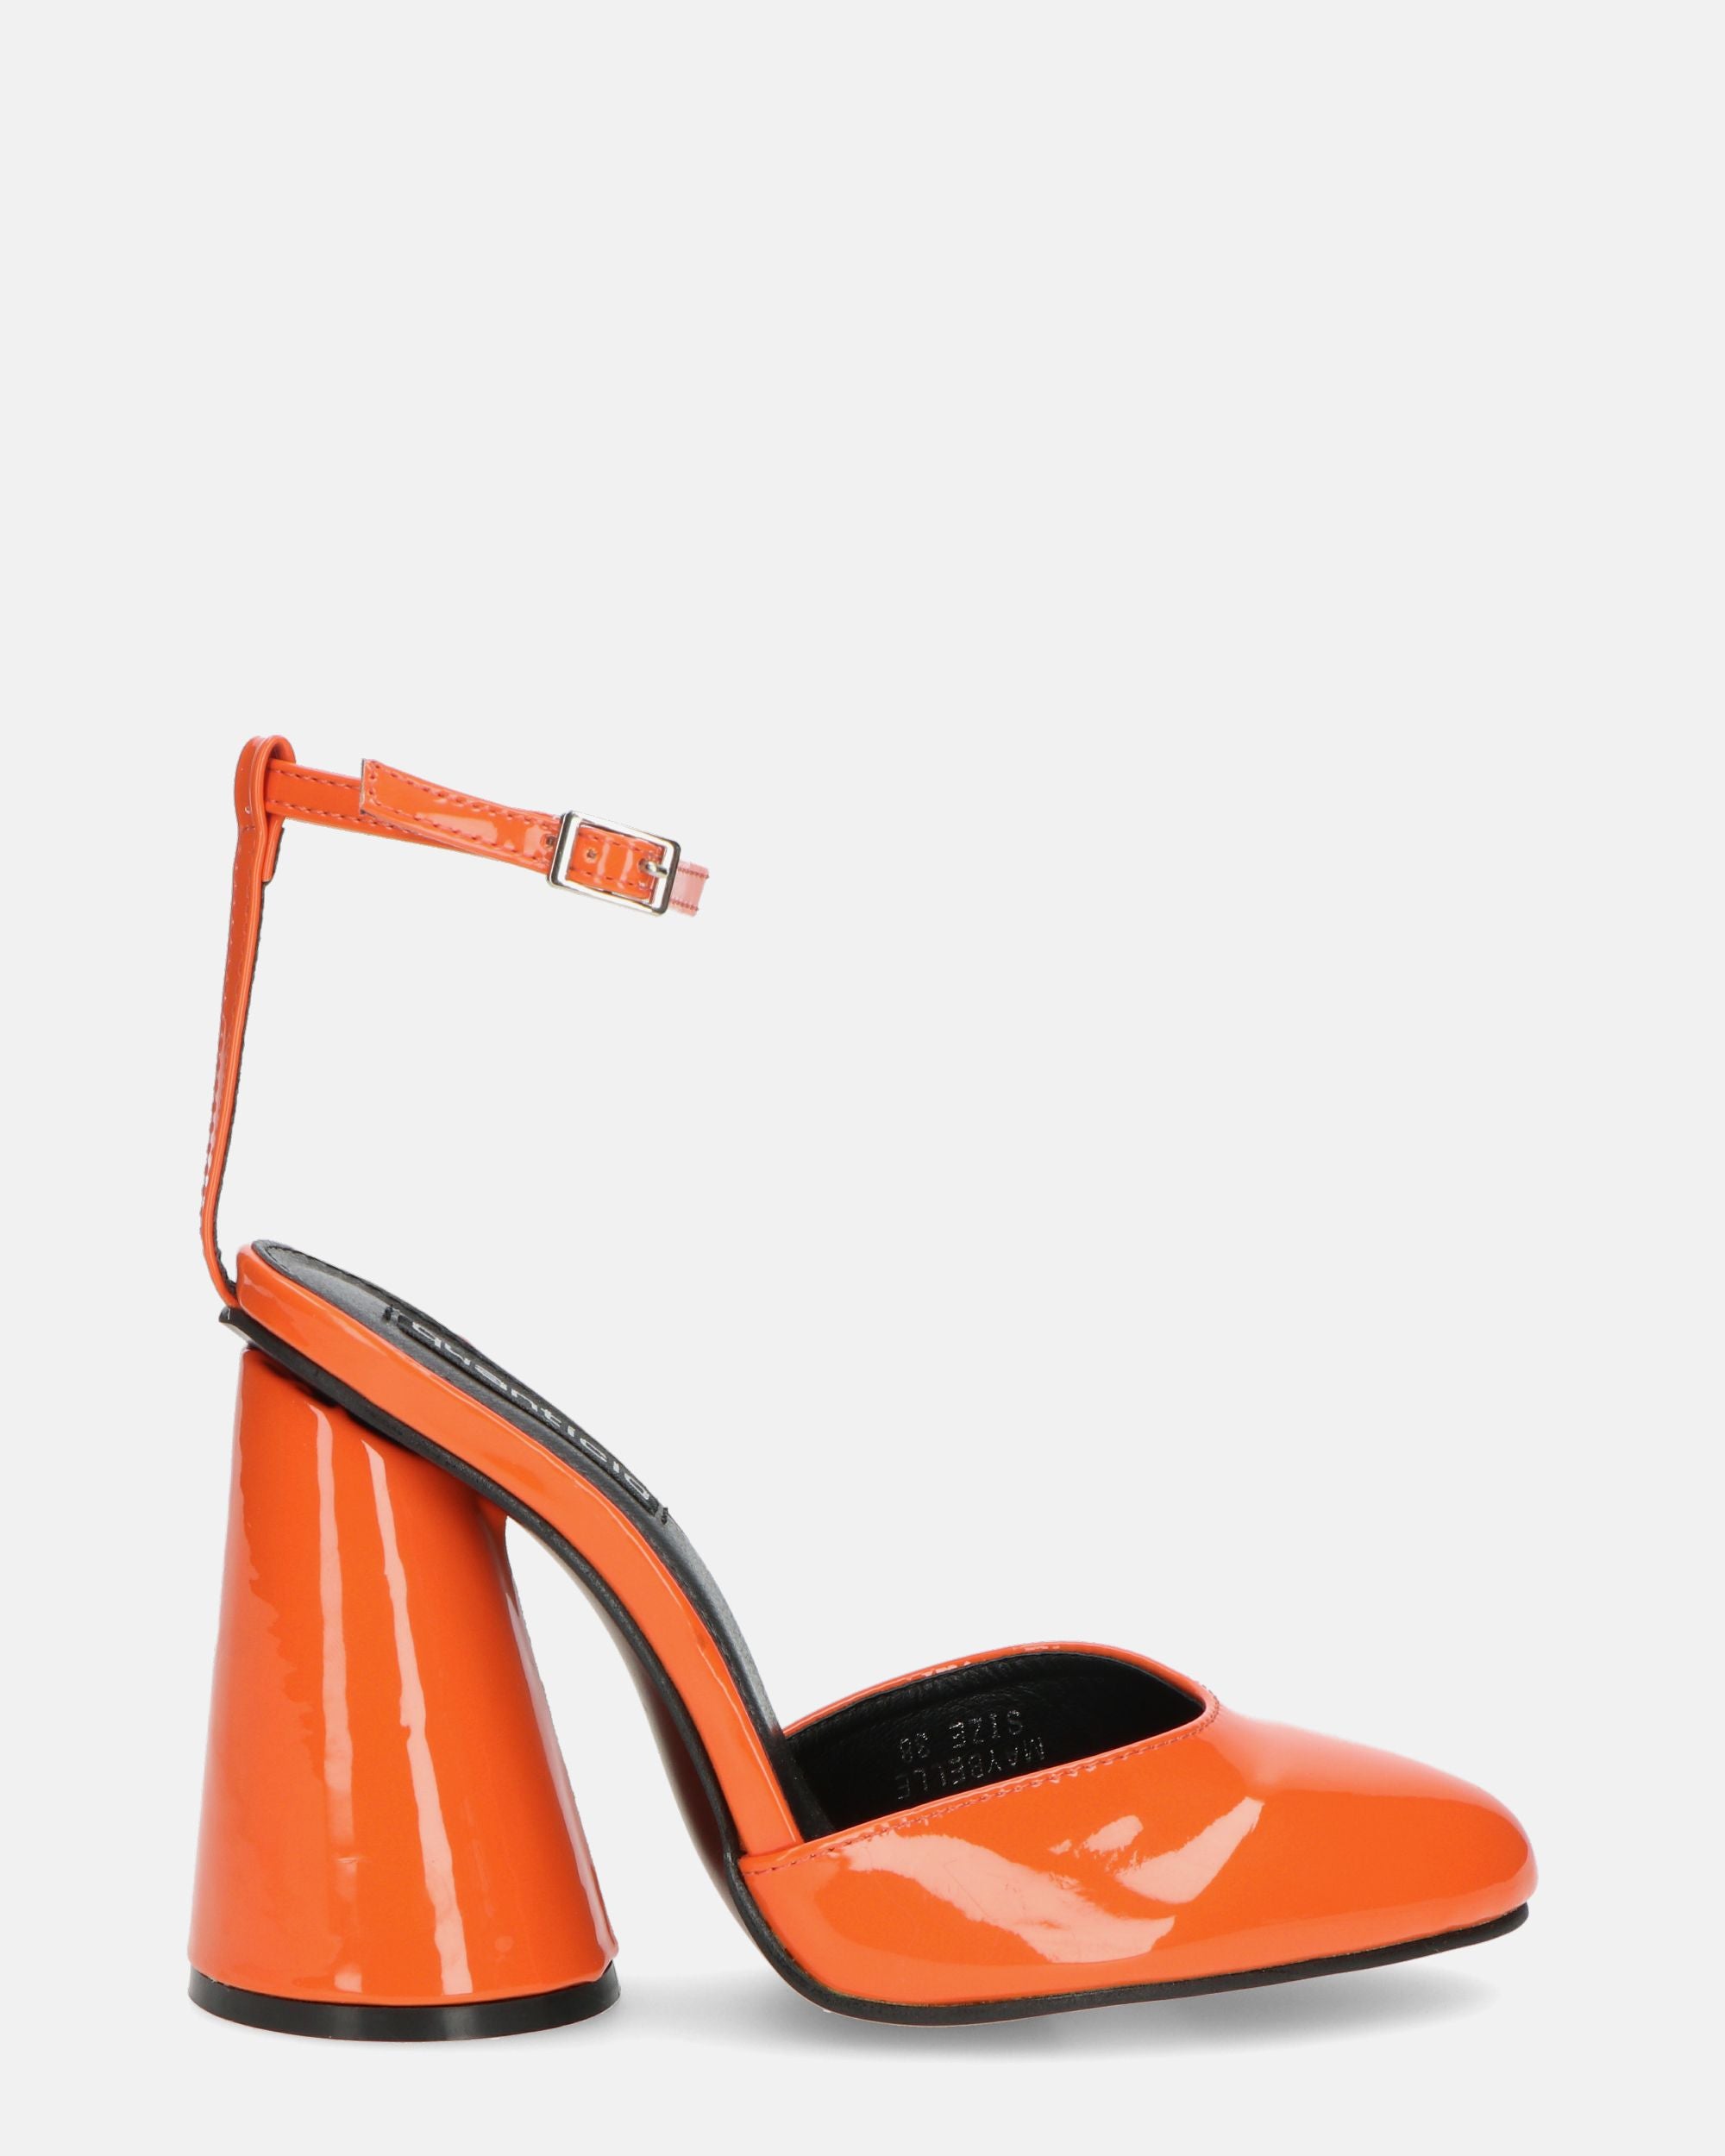 MAYBELLE - sandali in glassy arancione con tacco cilindrico